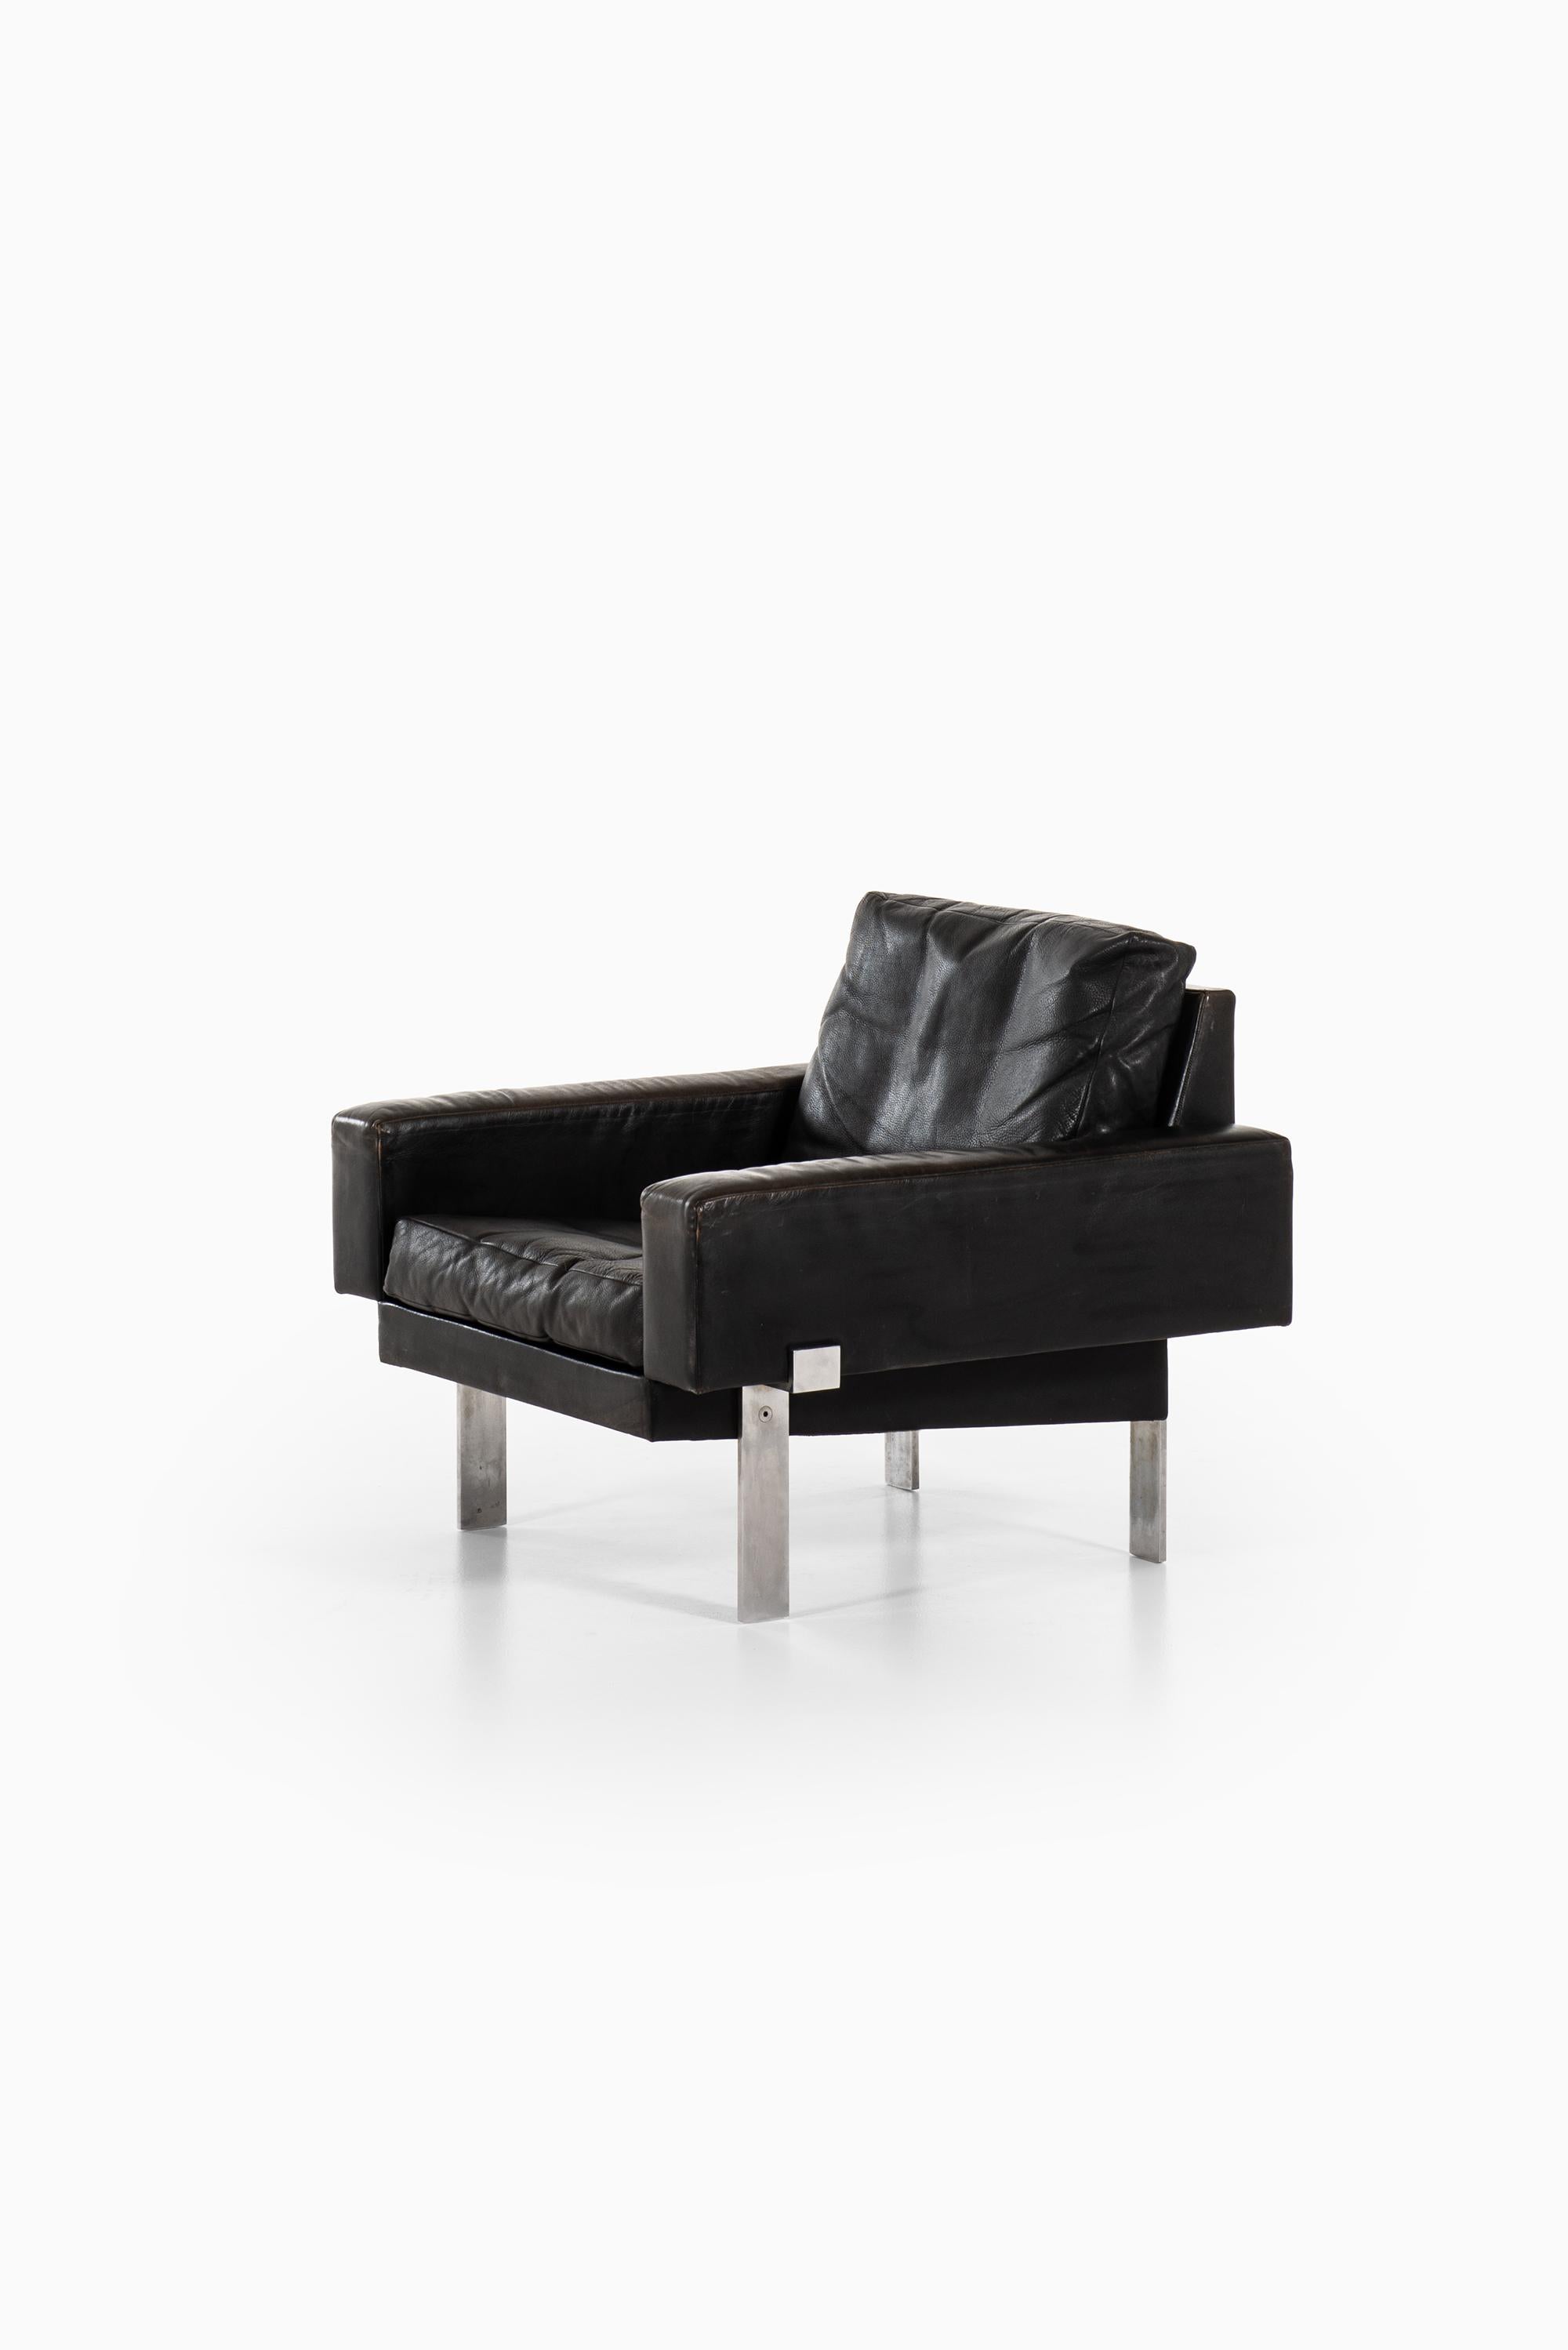 Illum Wikkelsø Easy Chair by Michael Laursen in Denmark For Sale 1